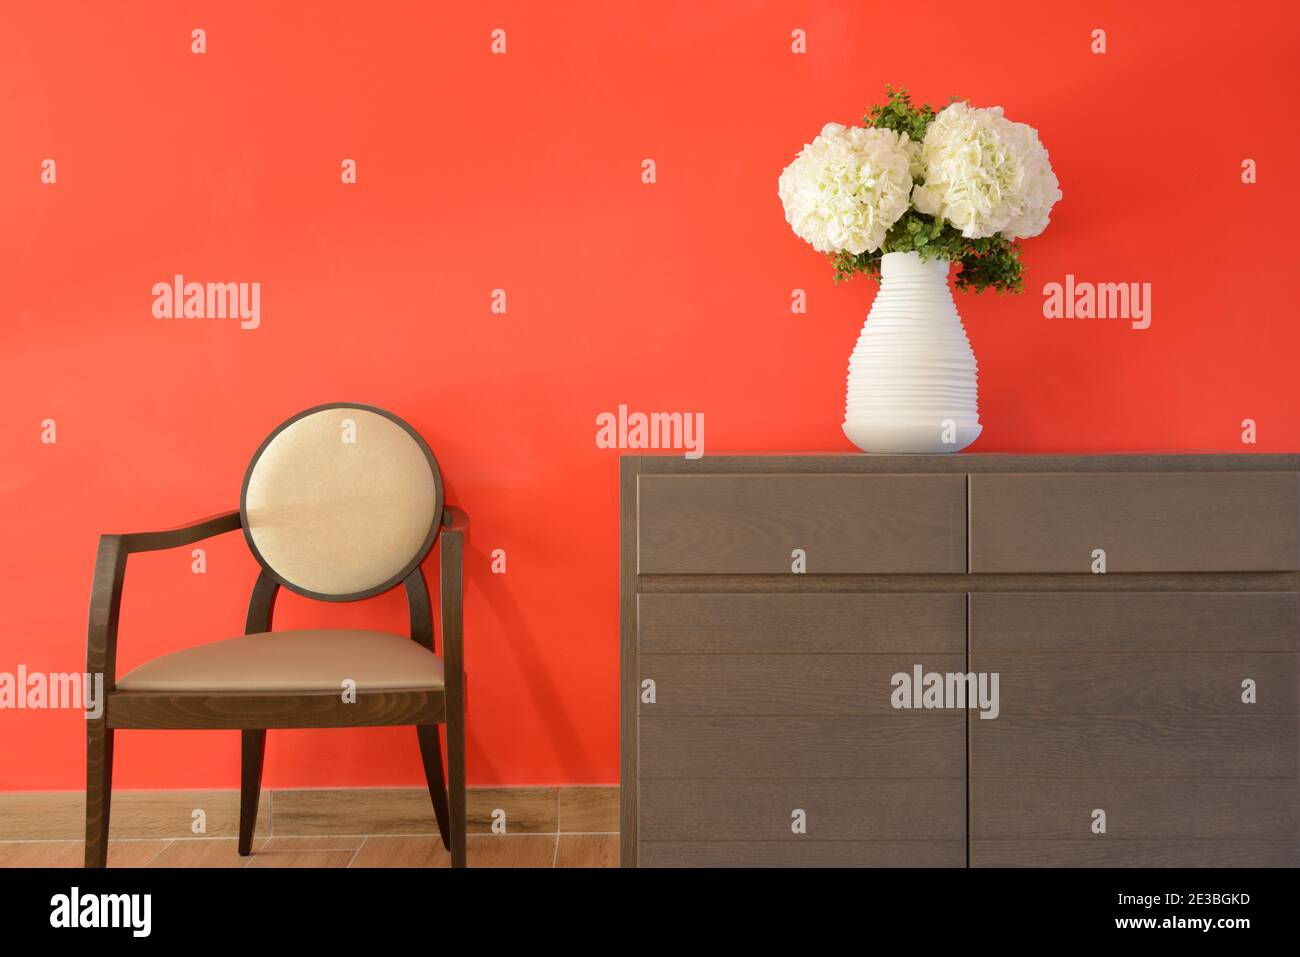 Interior minimalista con pared roja y flores artificiales blancas o. Claveles en jarrón blanco y silla de madera contemporánea Foto de stock